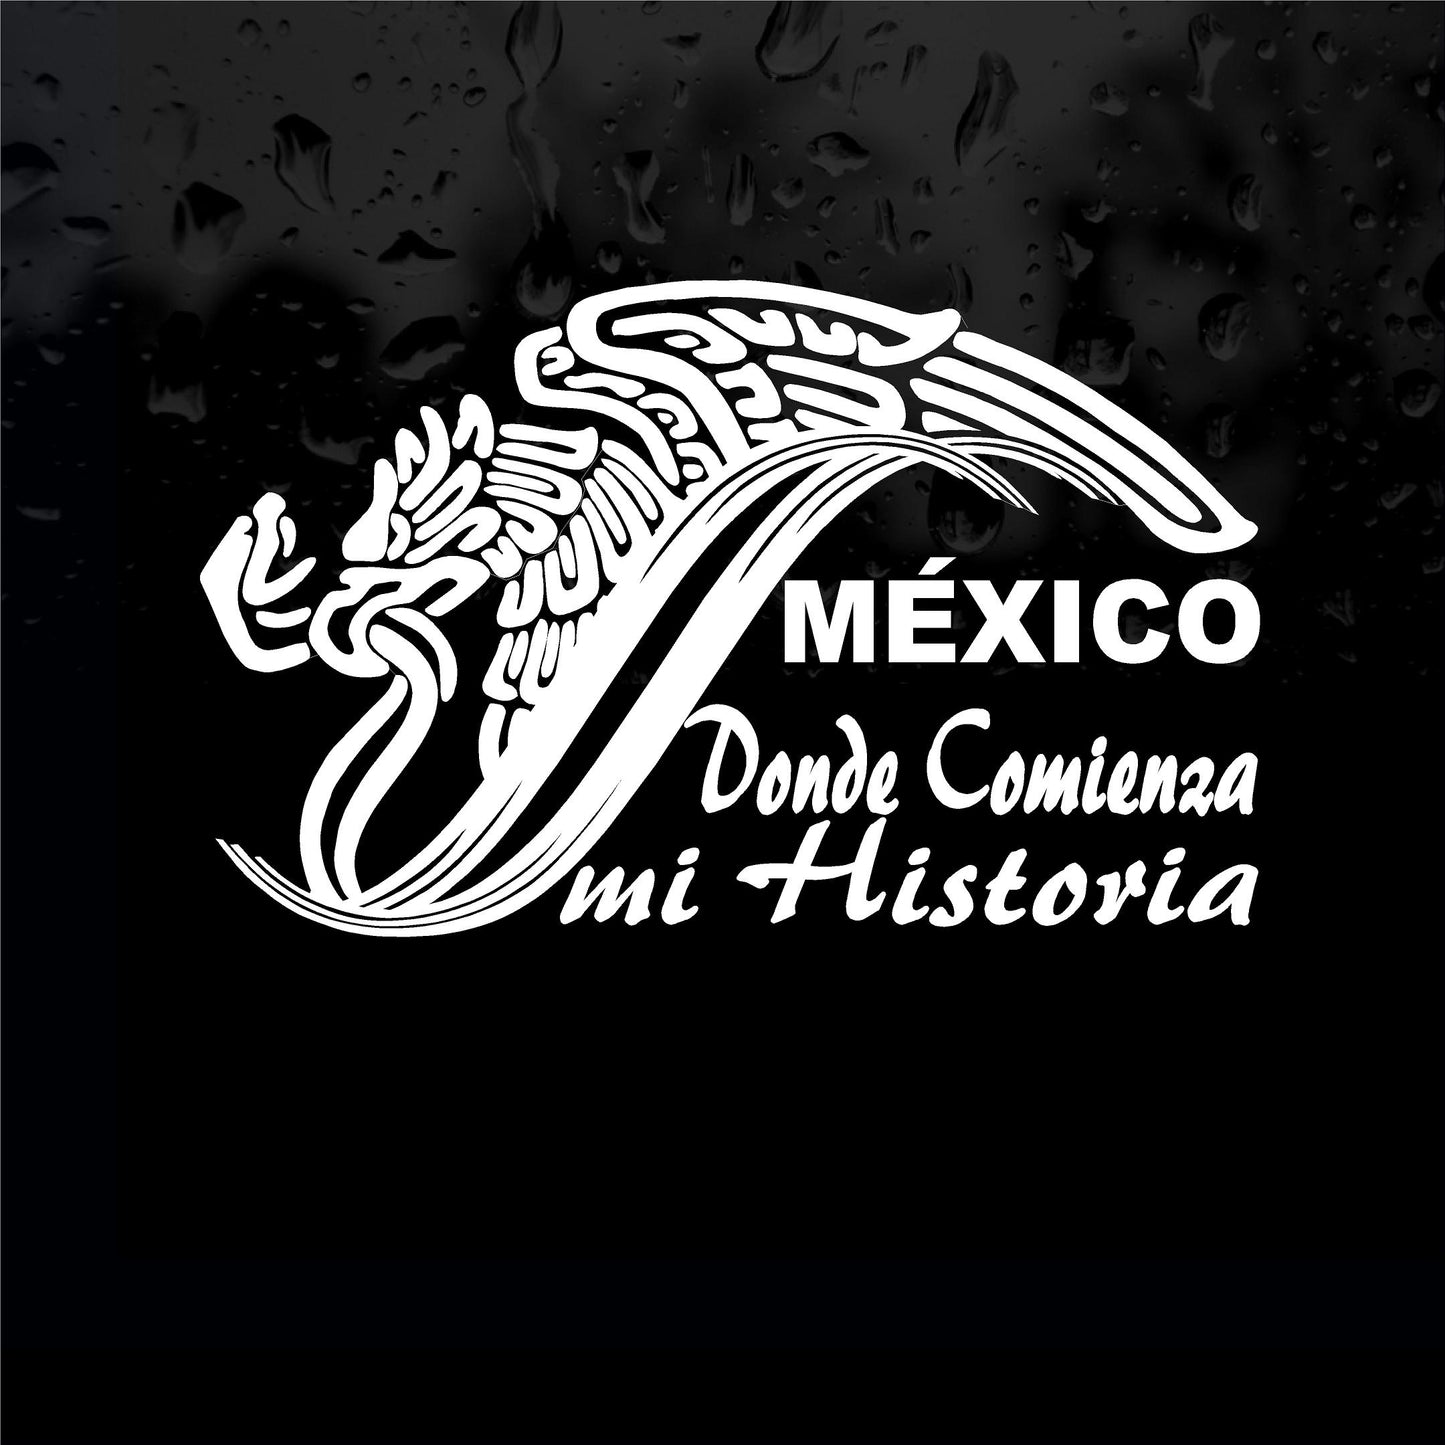 Decals - Stickers. Mexico: Donde comienza mi historia.